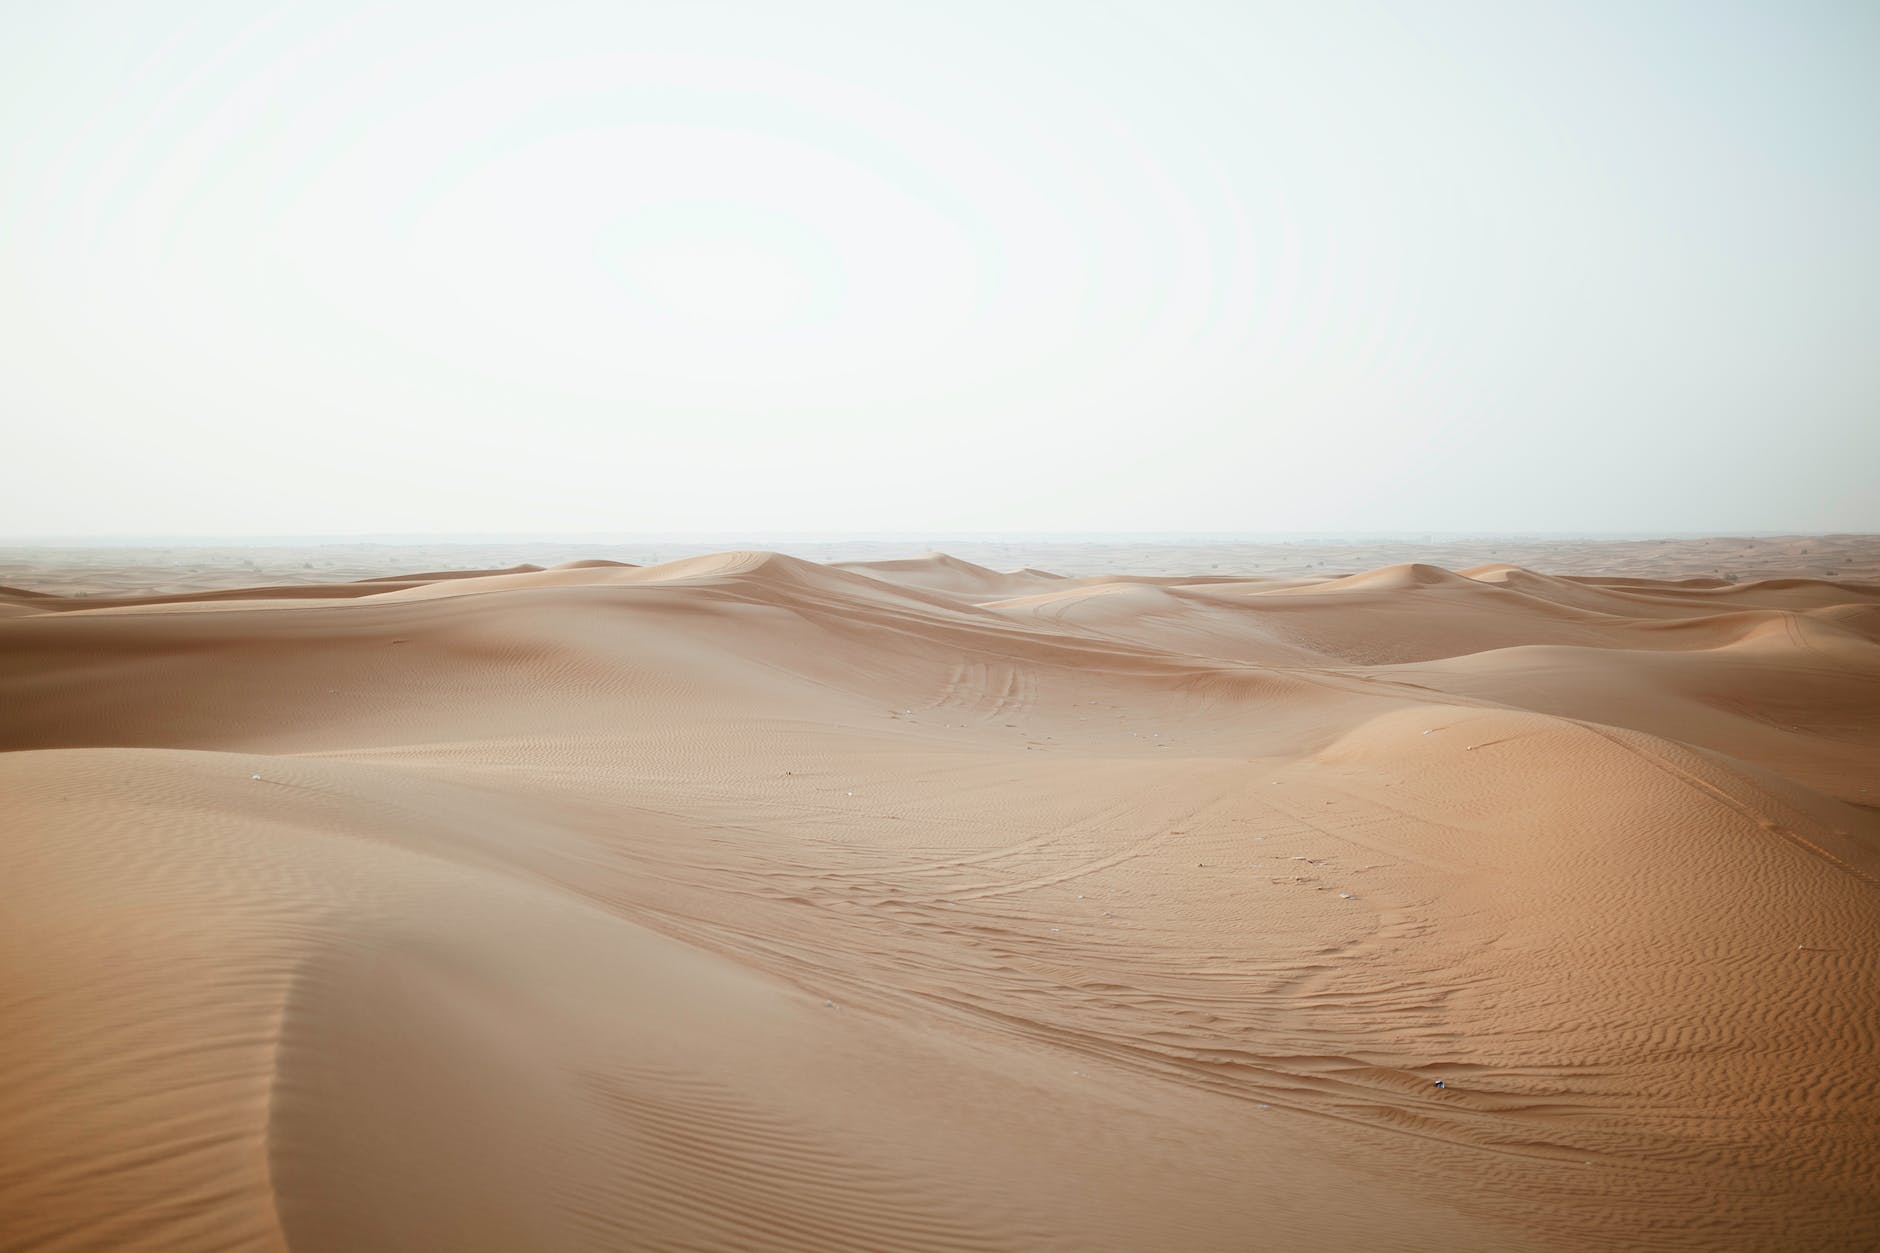 sand dunes in desert under cloudy sky